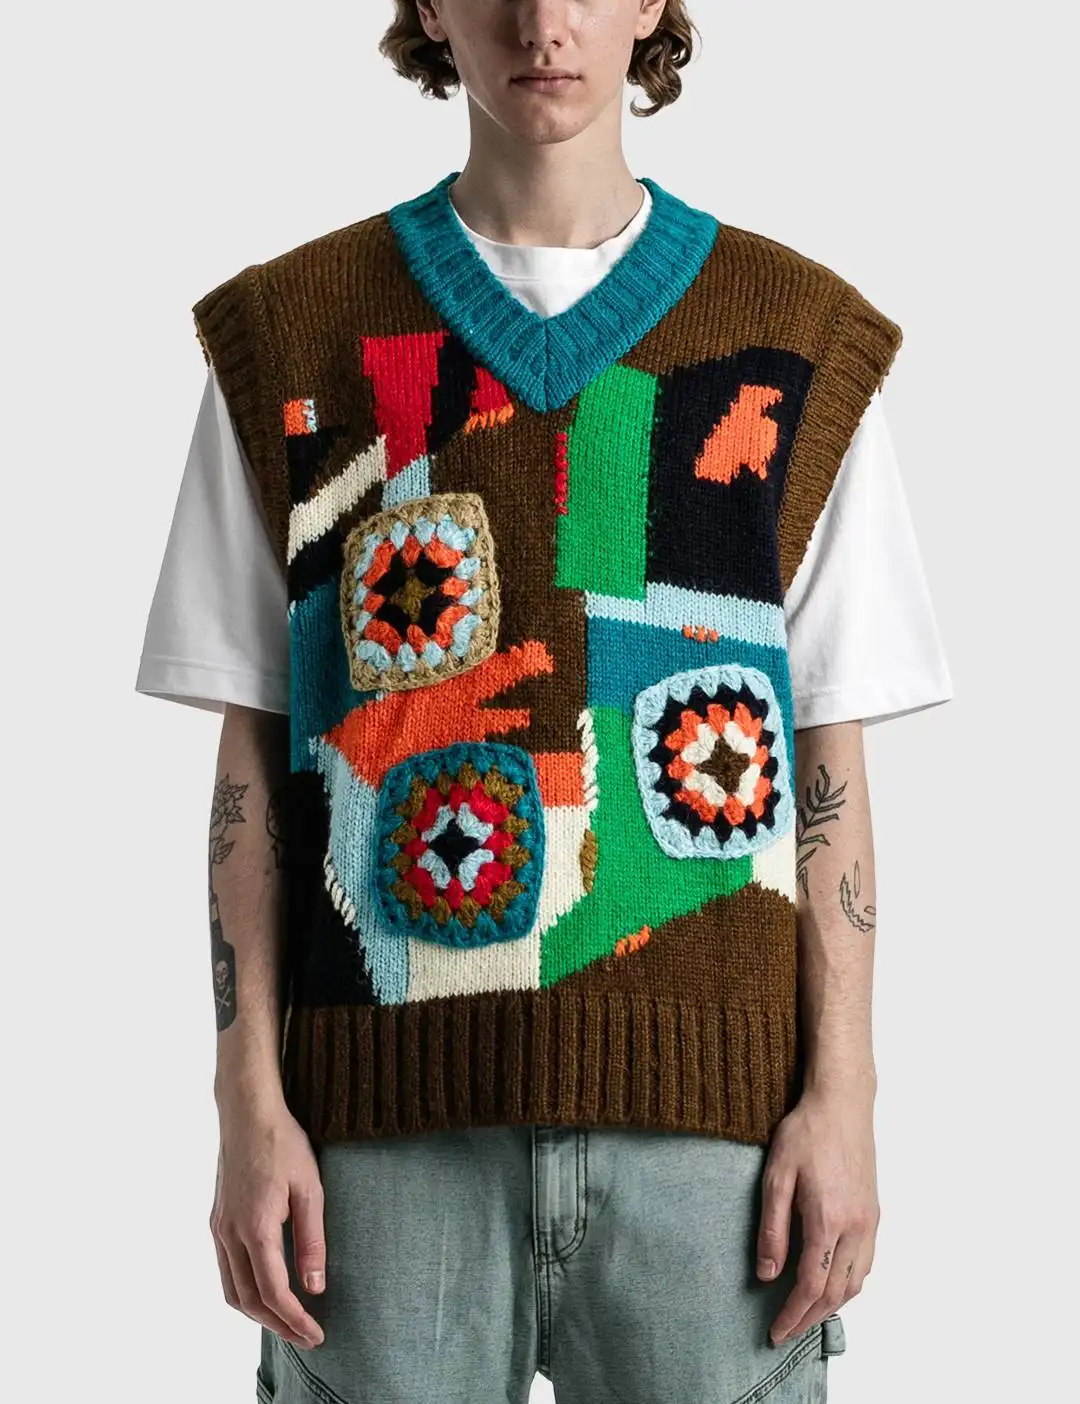 Fashion Custom Design Woven Jacquard Crochet V Neck Sleeveless Knit Men's Vest Sweater